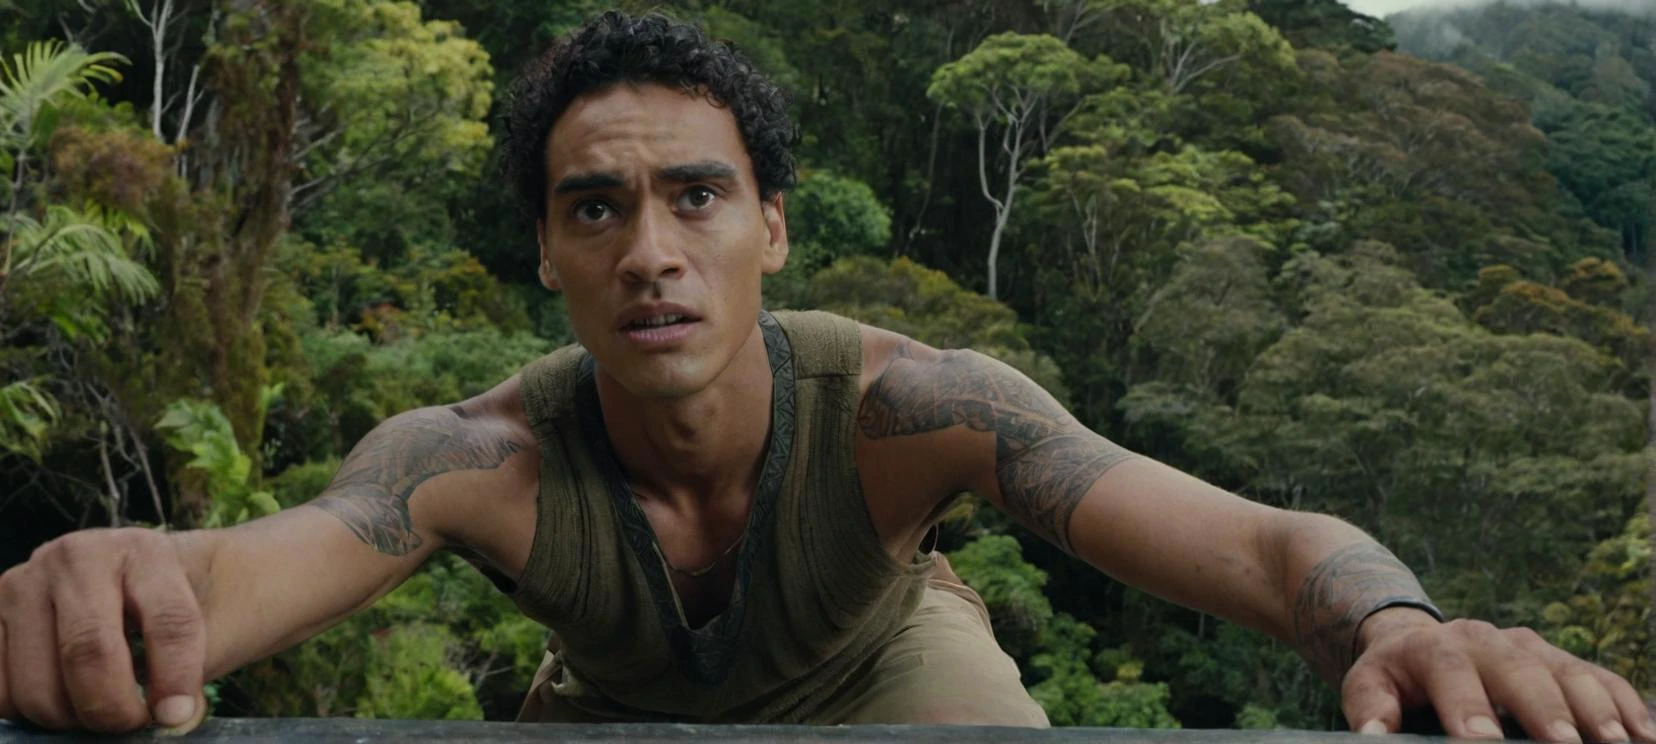 Um filme ainda uma selfie de um alto, jovem, homem magro e meio maori em uma borda em uma floresta da Nova Zelândia, com uma expressão de leve preocupação no rosto.



cinematic, filme ainda